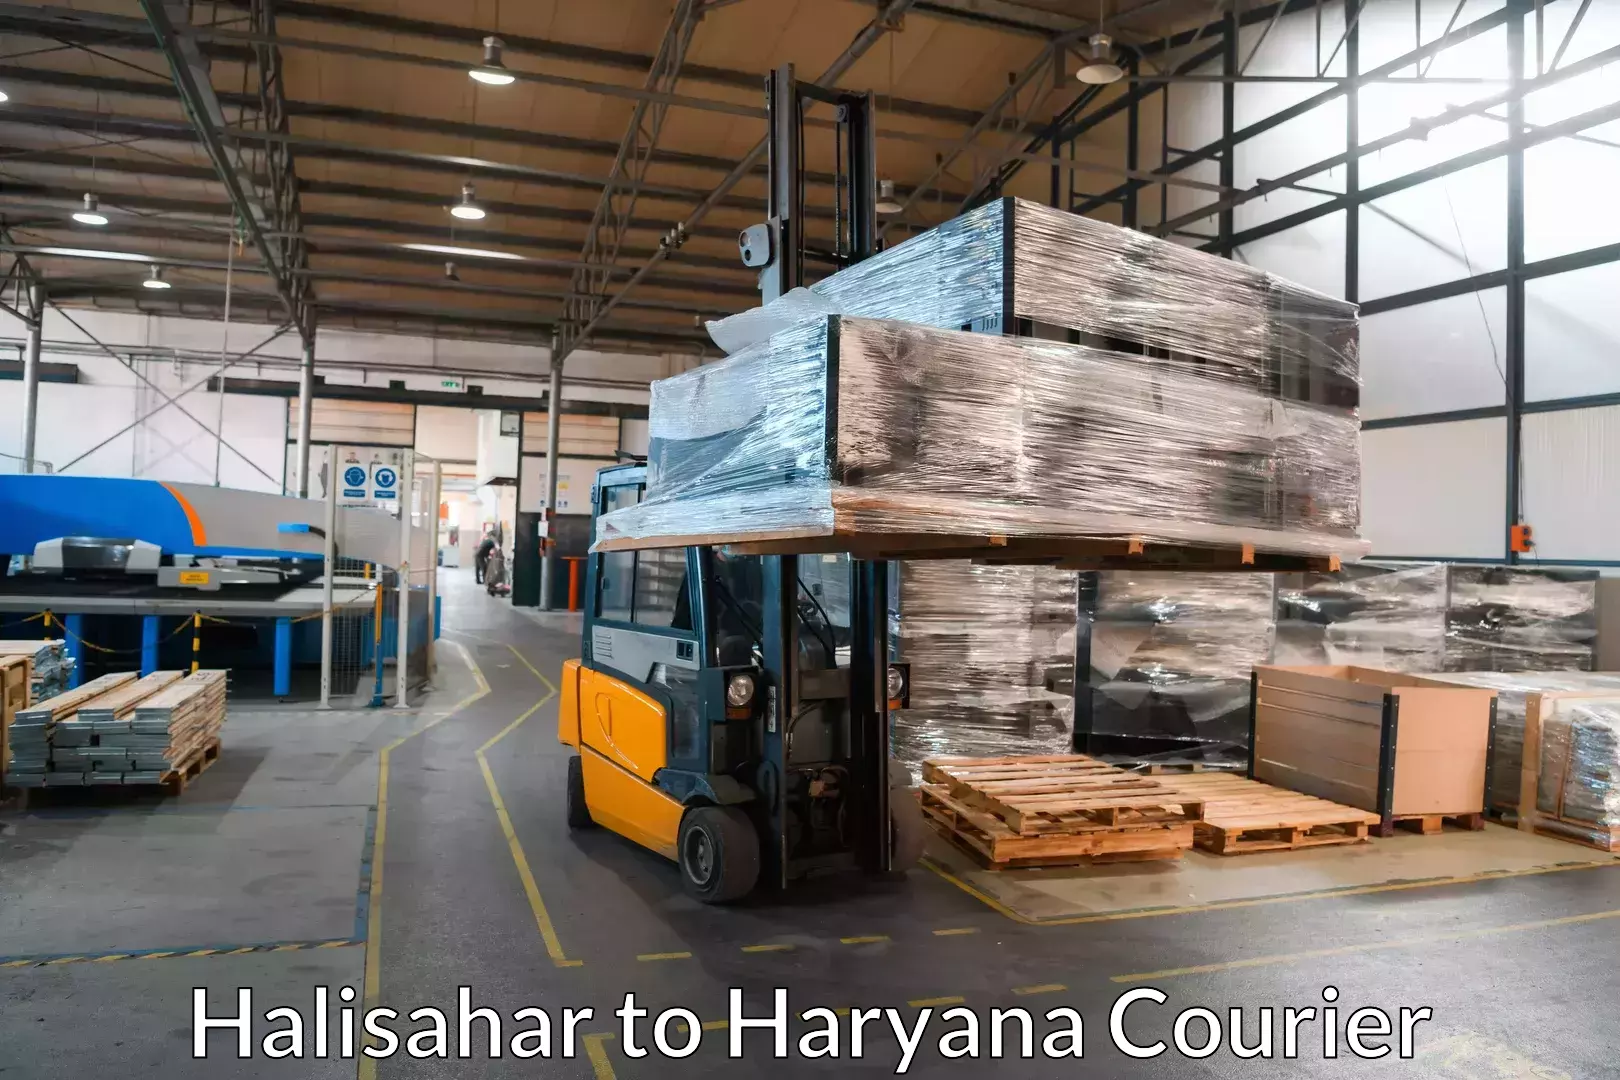 Household goods transport Halisahar to Haryana